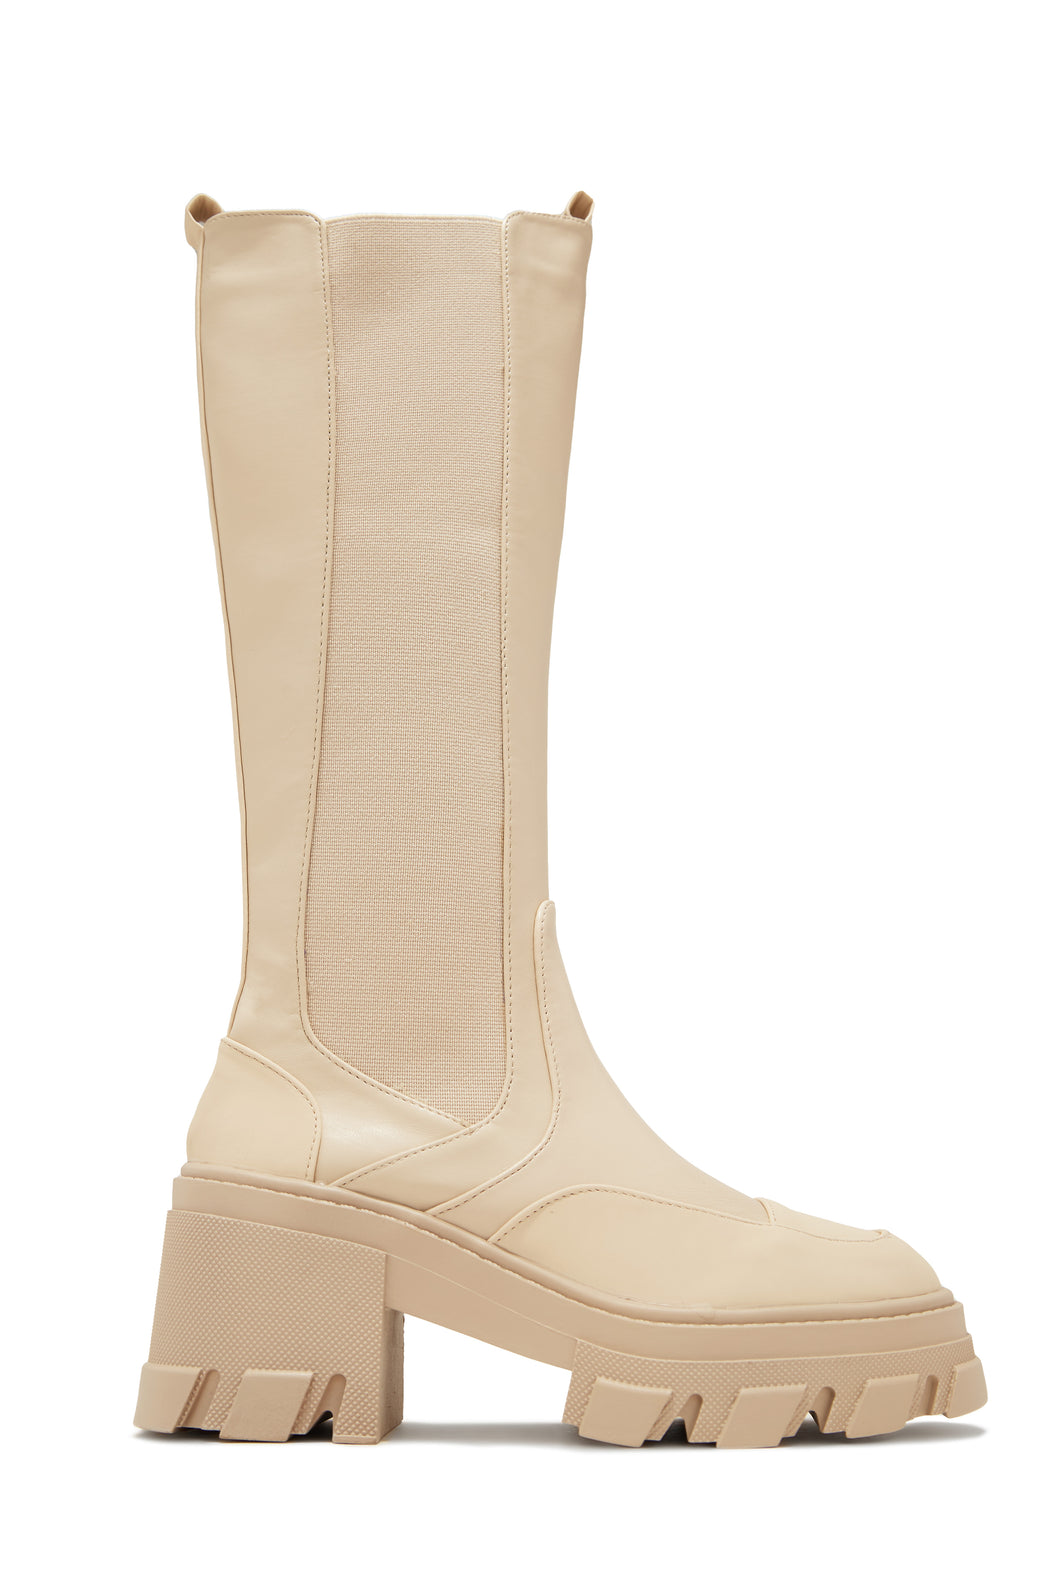 Leonie Combat Boots - Cream